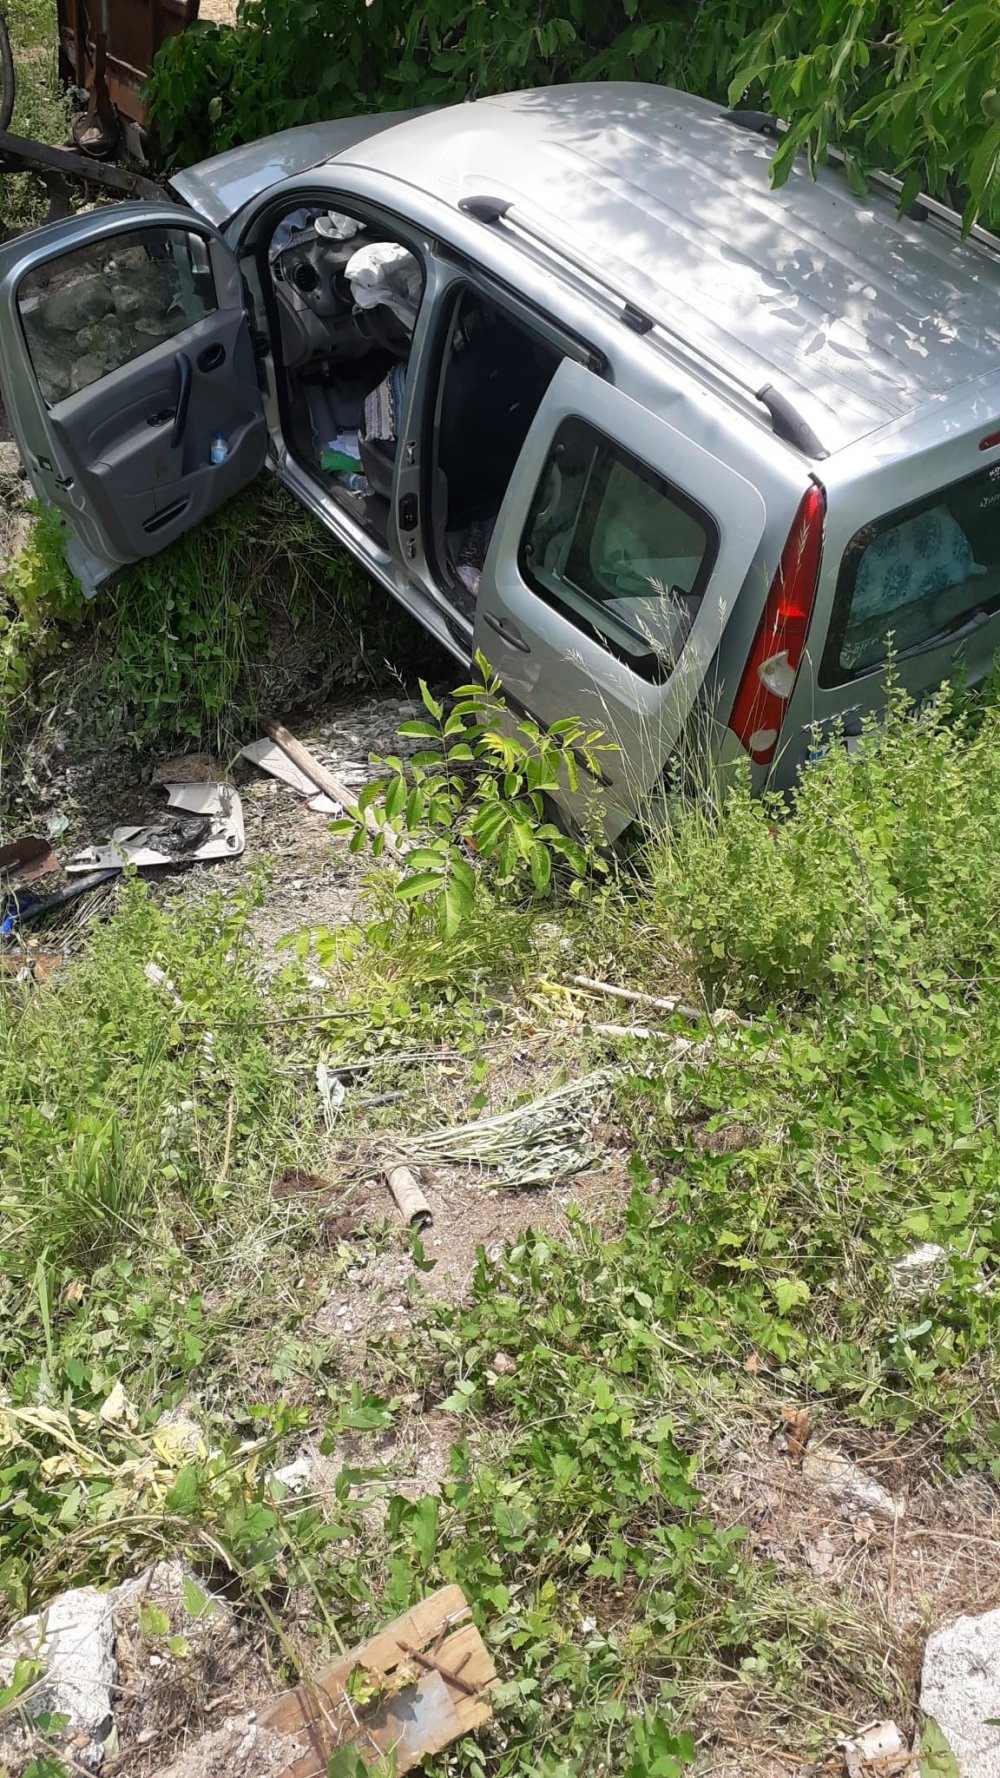 Denizli’nin Çameli ilçesinde hafif ticari aracın direksiyon hakimiyetini kaybeden sürücü kontrolden çıkarak dereye girdi. Meydana gelen trafik kazasında 3 kişi hafif yaralandı.